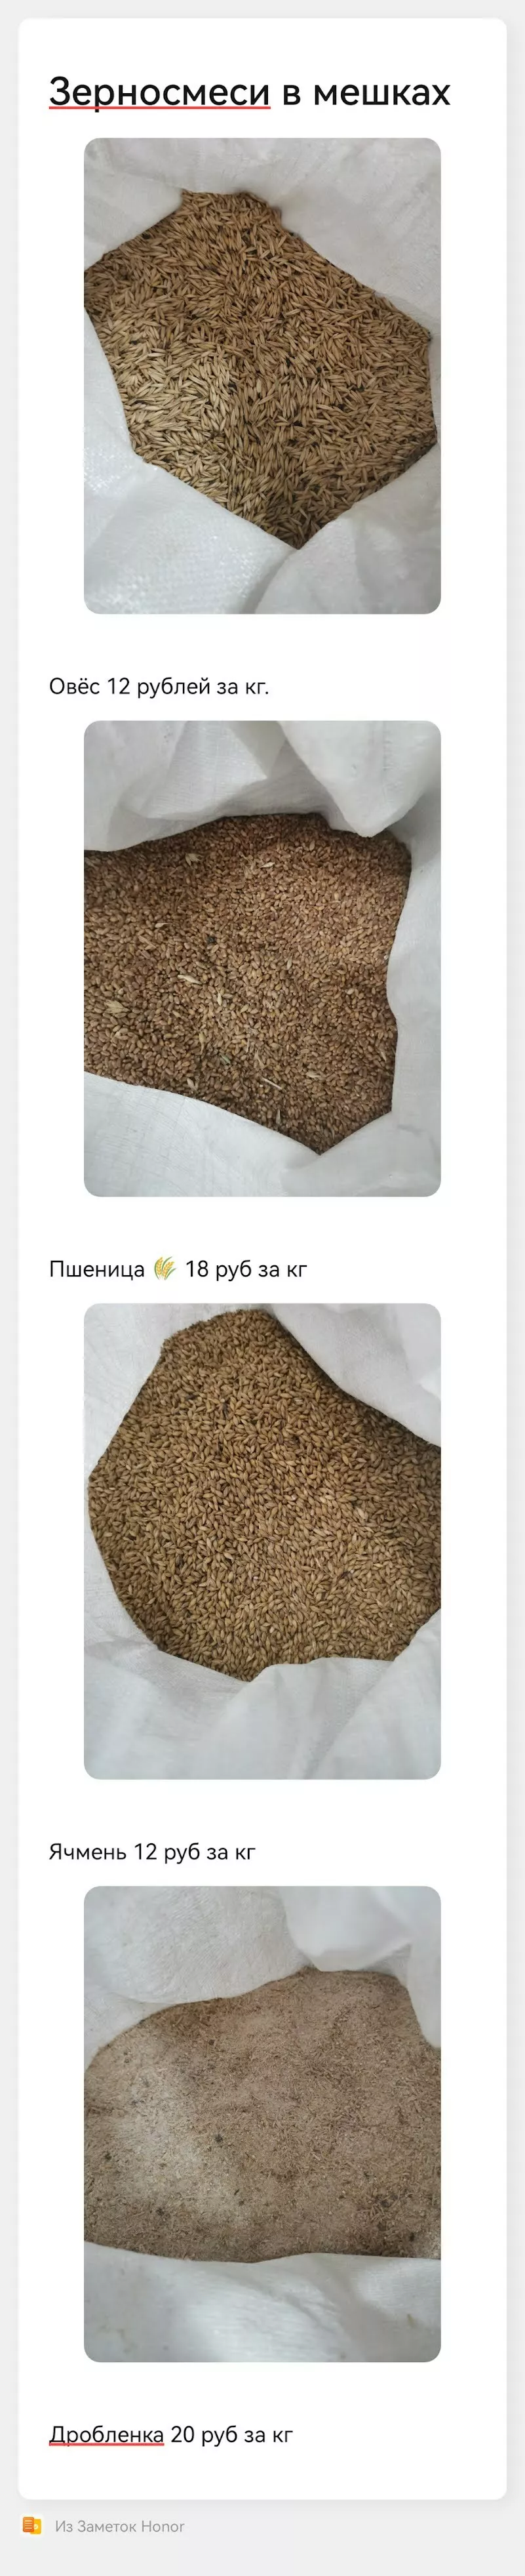 фотография продукта Овес, пшеница, ячмень, дробленка